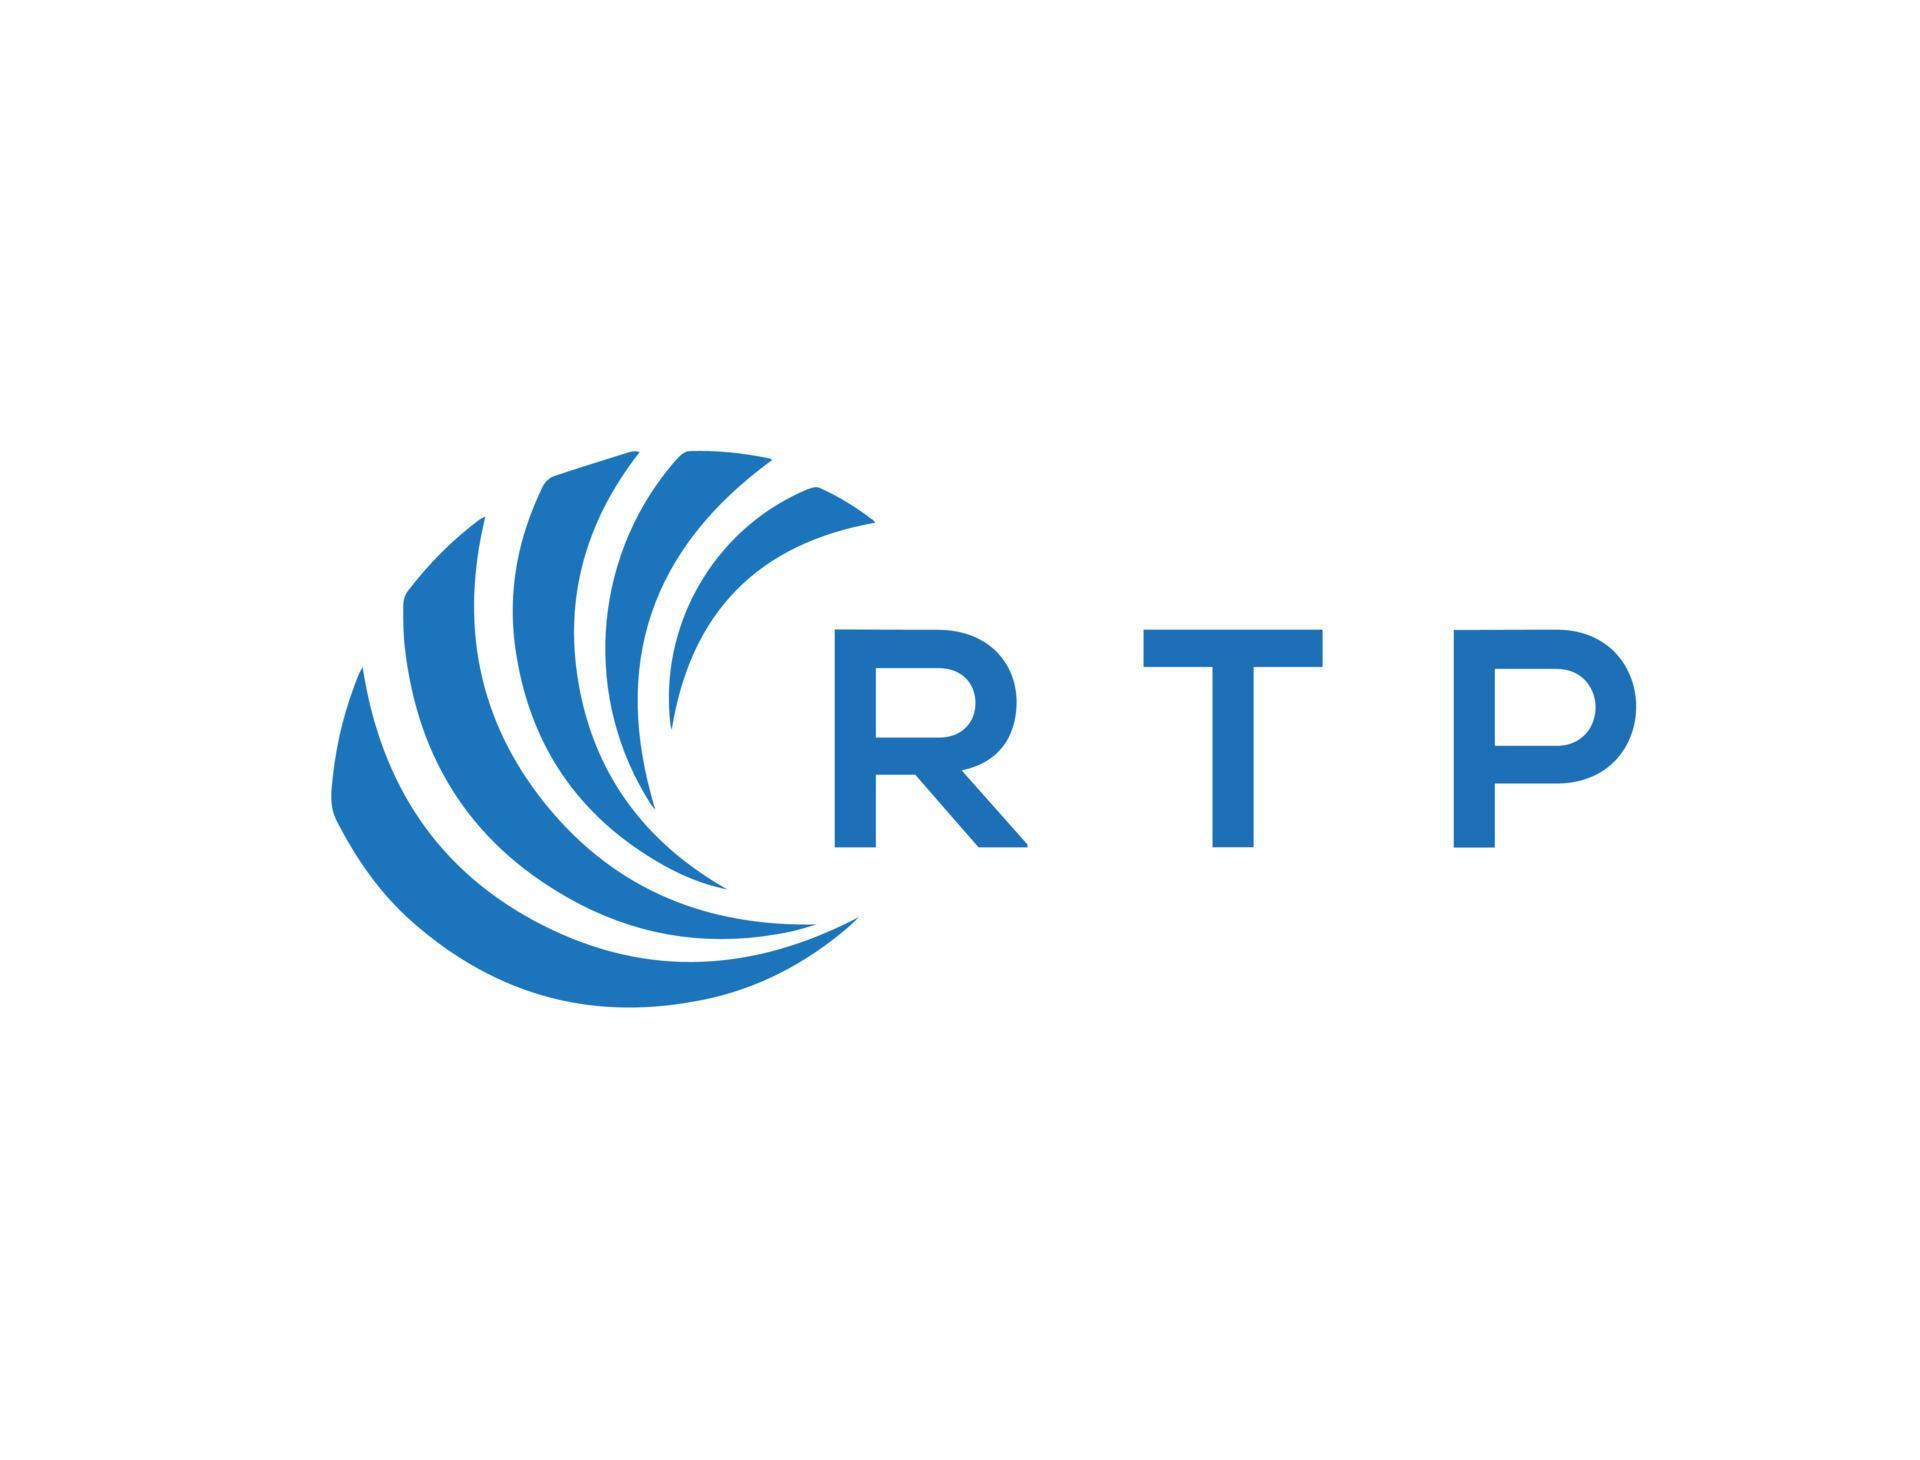 RTP letter logo design on white background. RTP creative circle letter ...